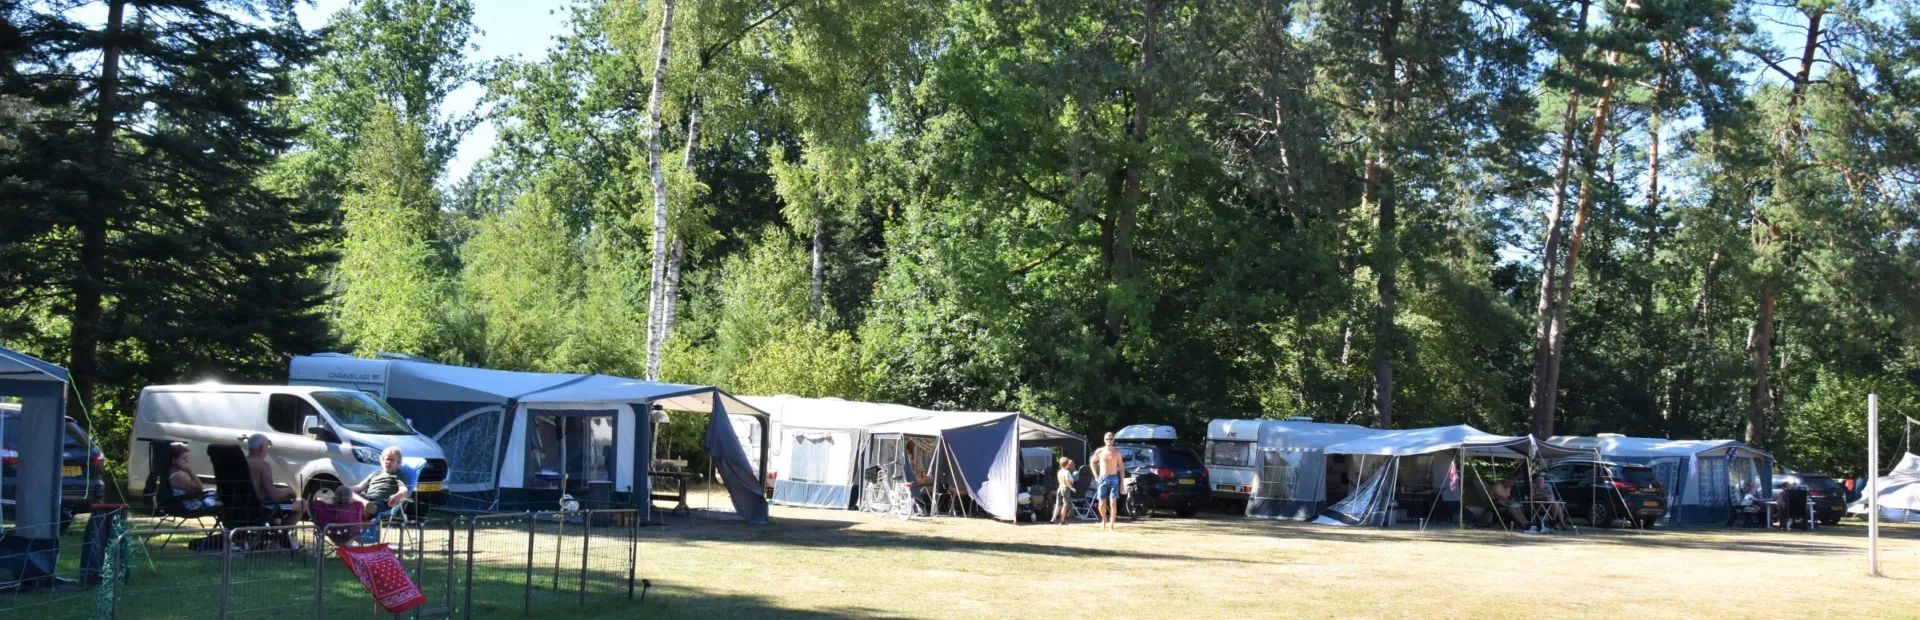 Camping Ommen kampeerplaats honden toegestaan Ommervallei 3